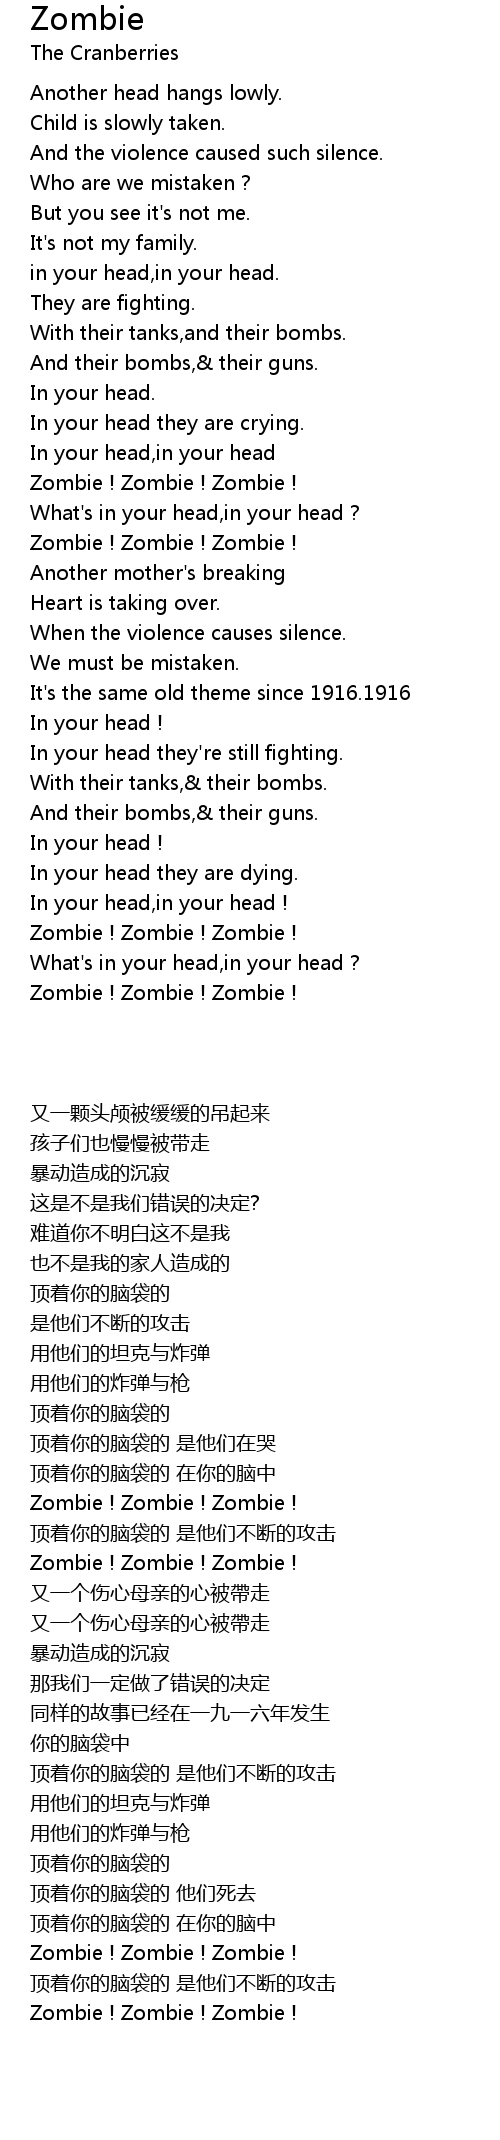 The Cranberries - Zombie 🎵 Lyrics 1 hour 